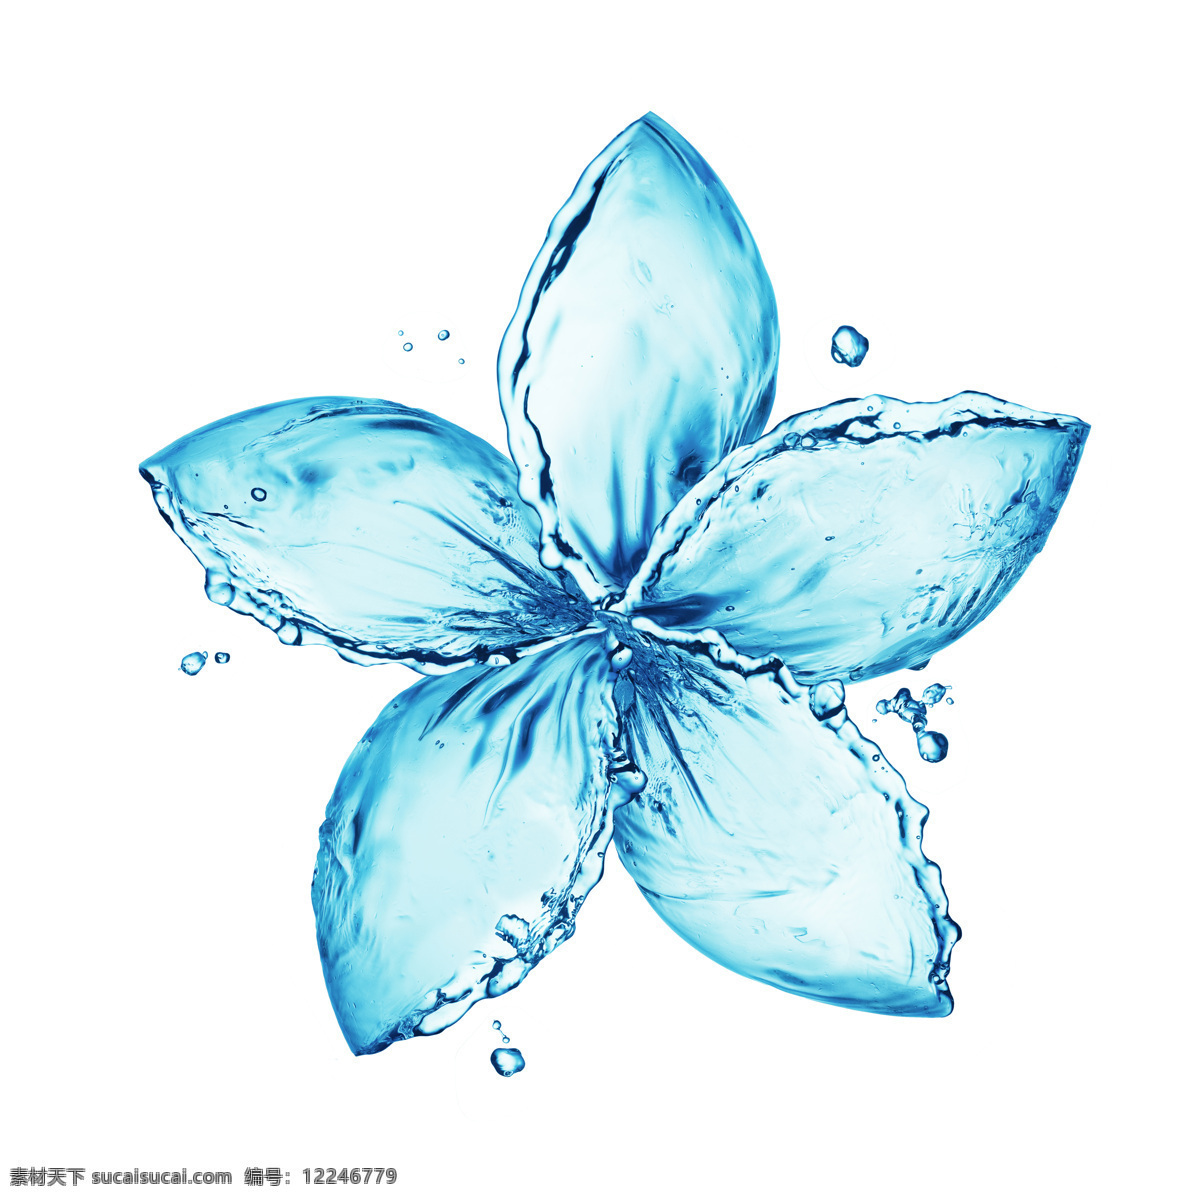 创意 水 组成 花瓣 图案 高清 大图 水滴